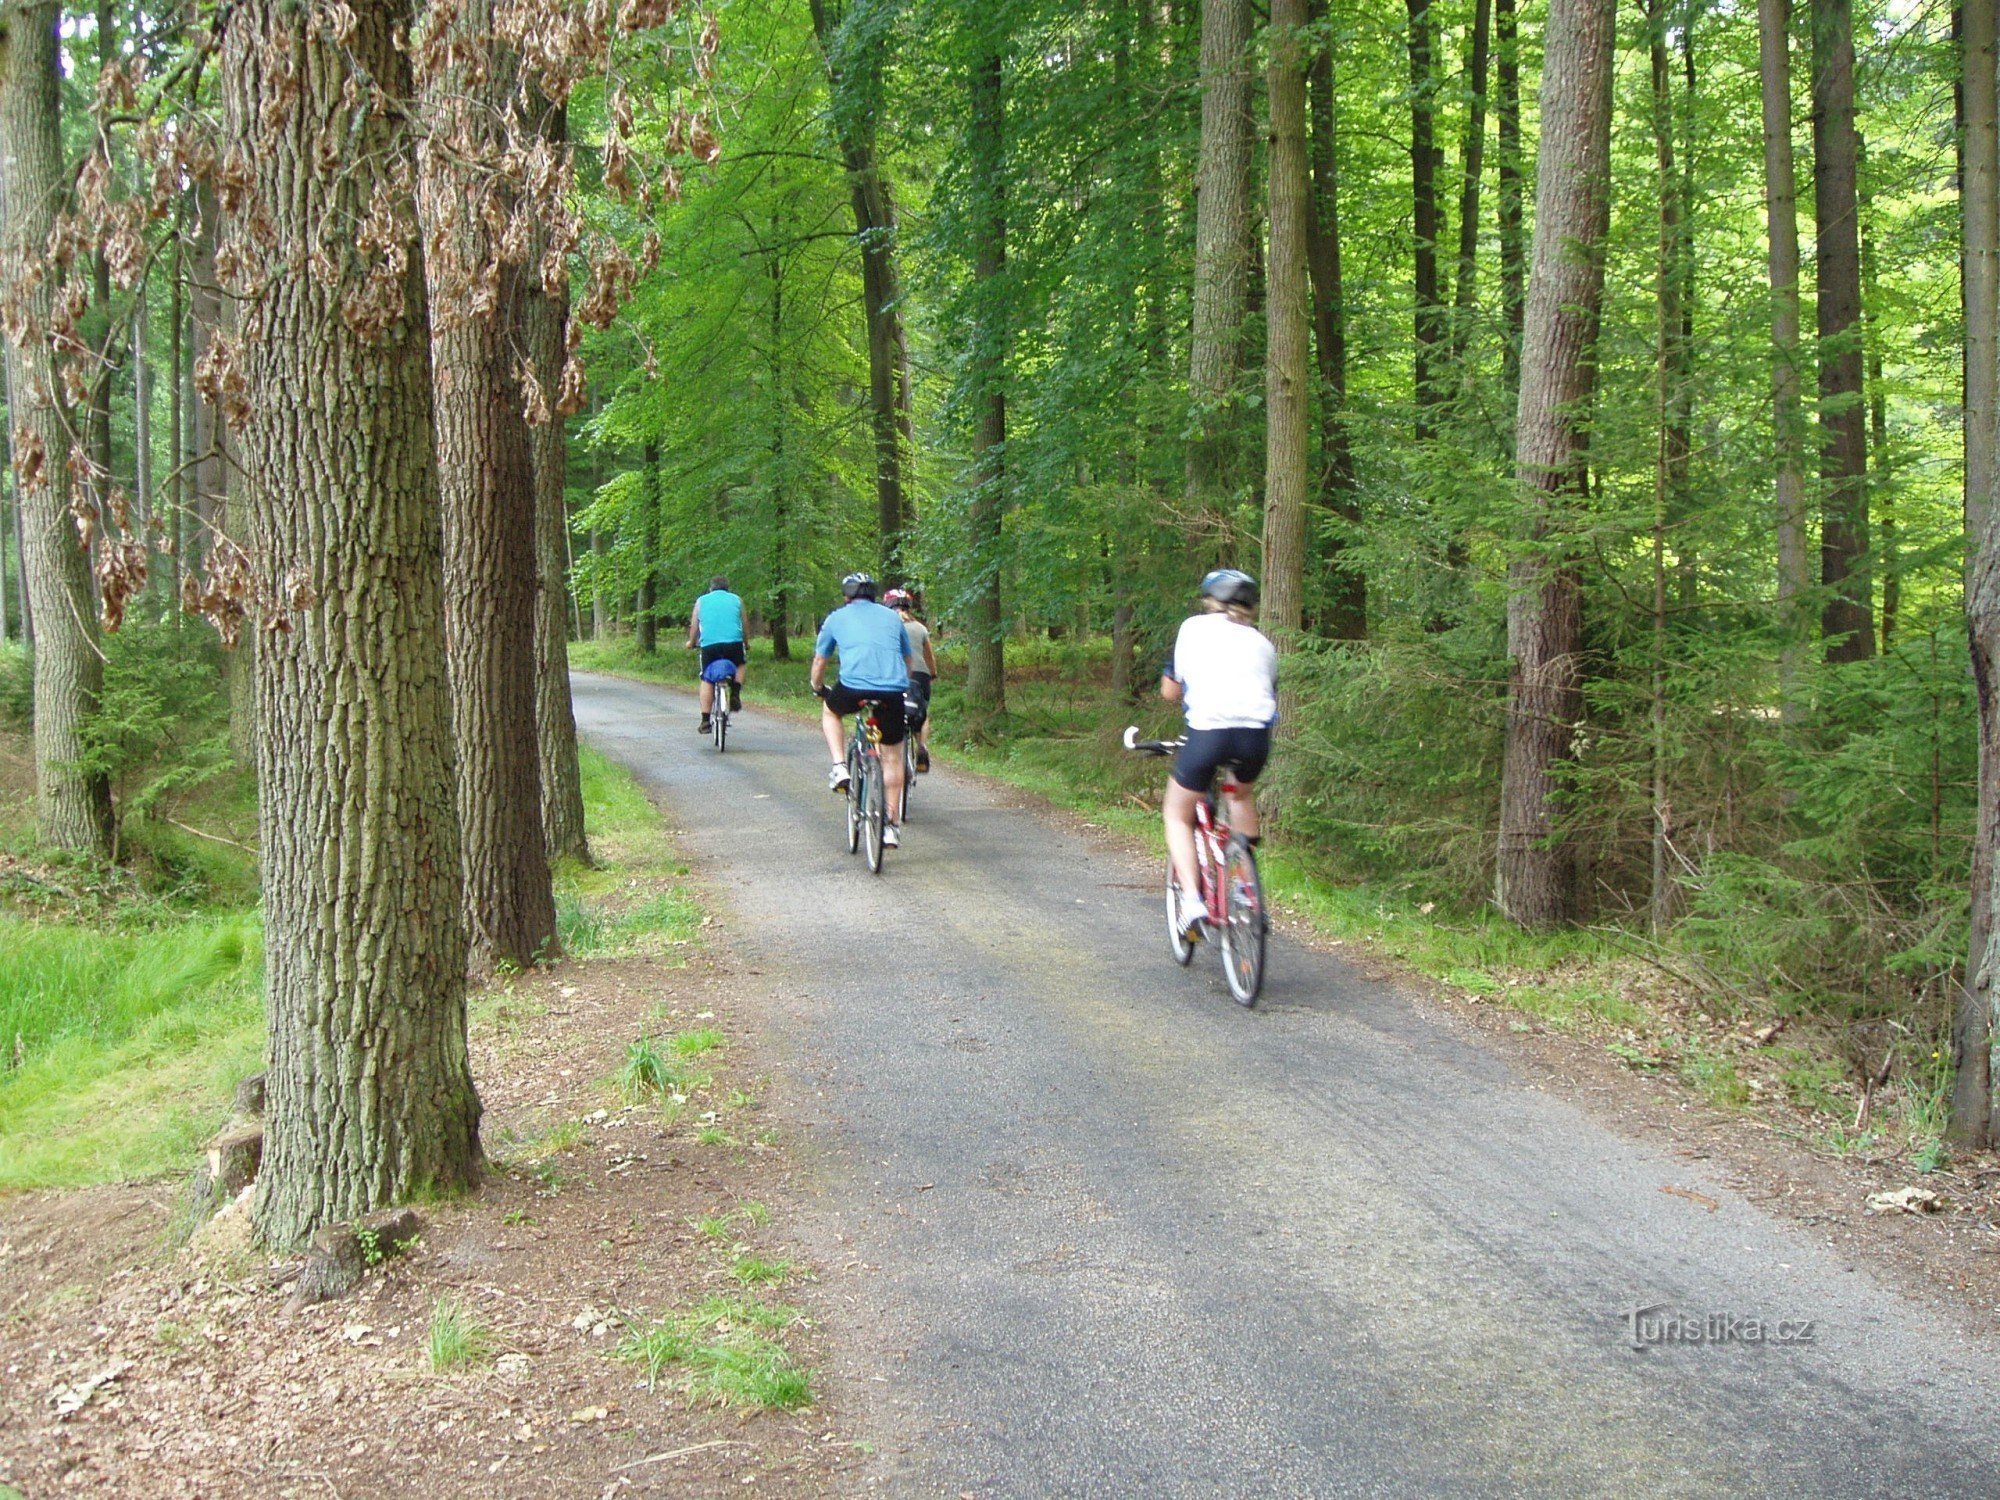 Асфальтированные лесные дороги идеально подходят для езды на велосипеде в Тржебонском крае.